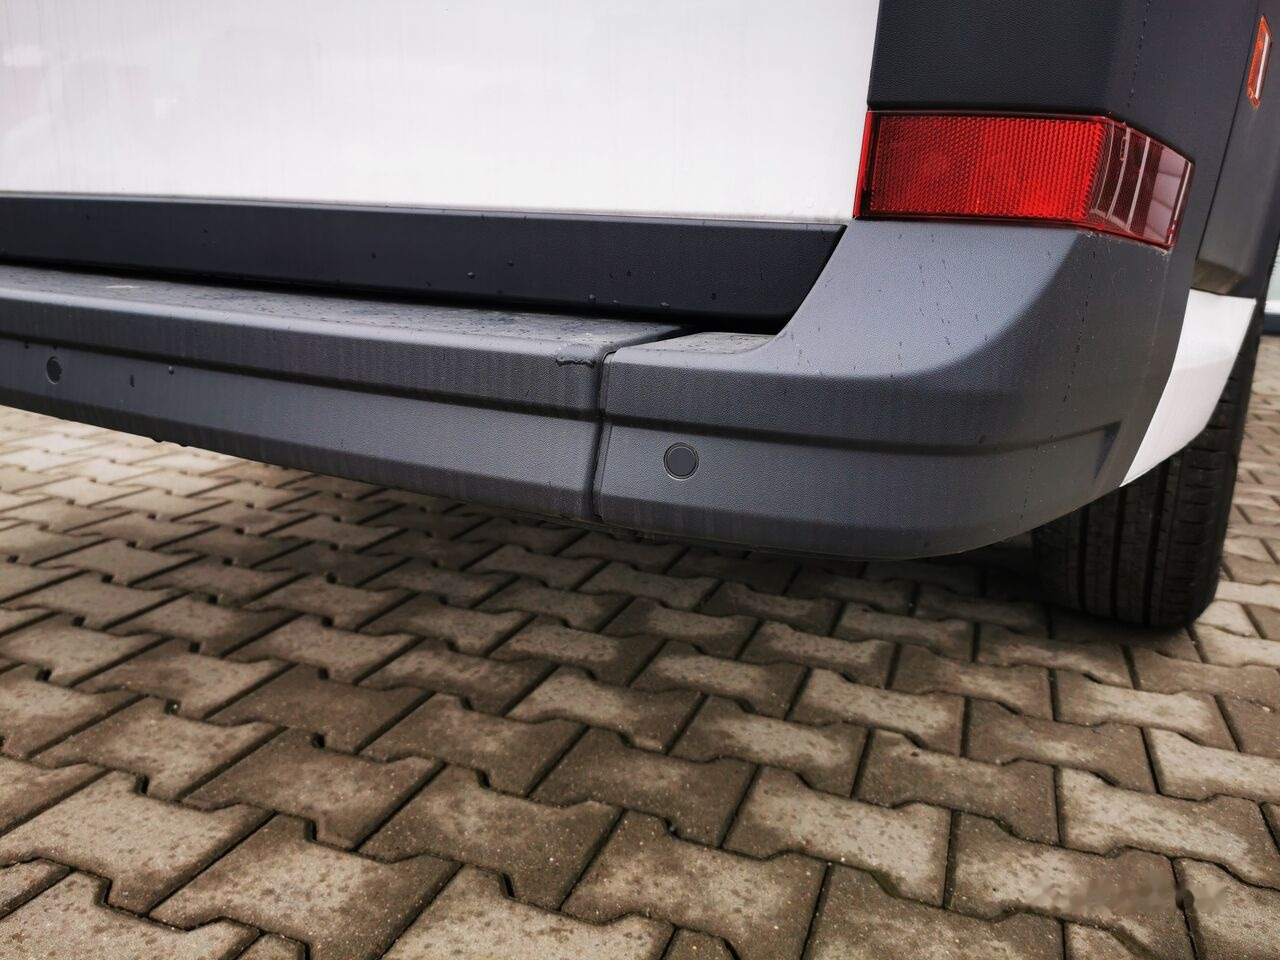 New Panel van Volkswagen Crafter: picture 6